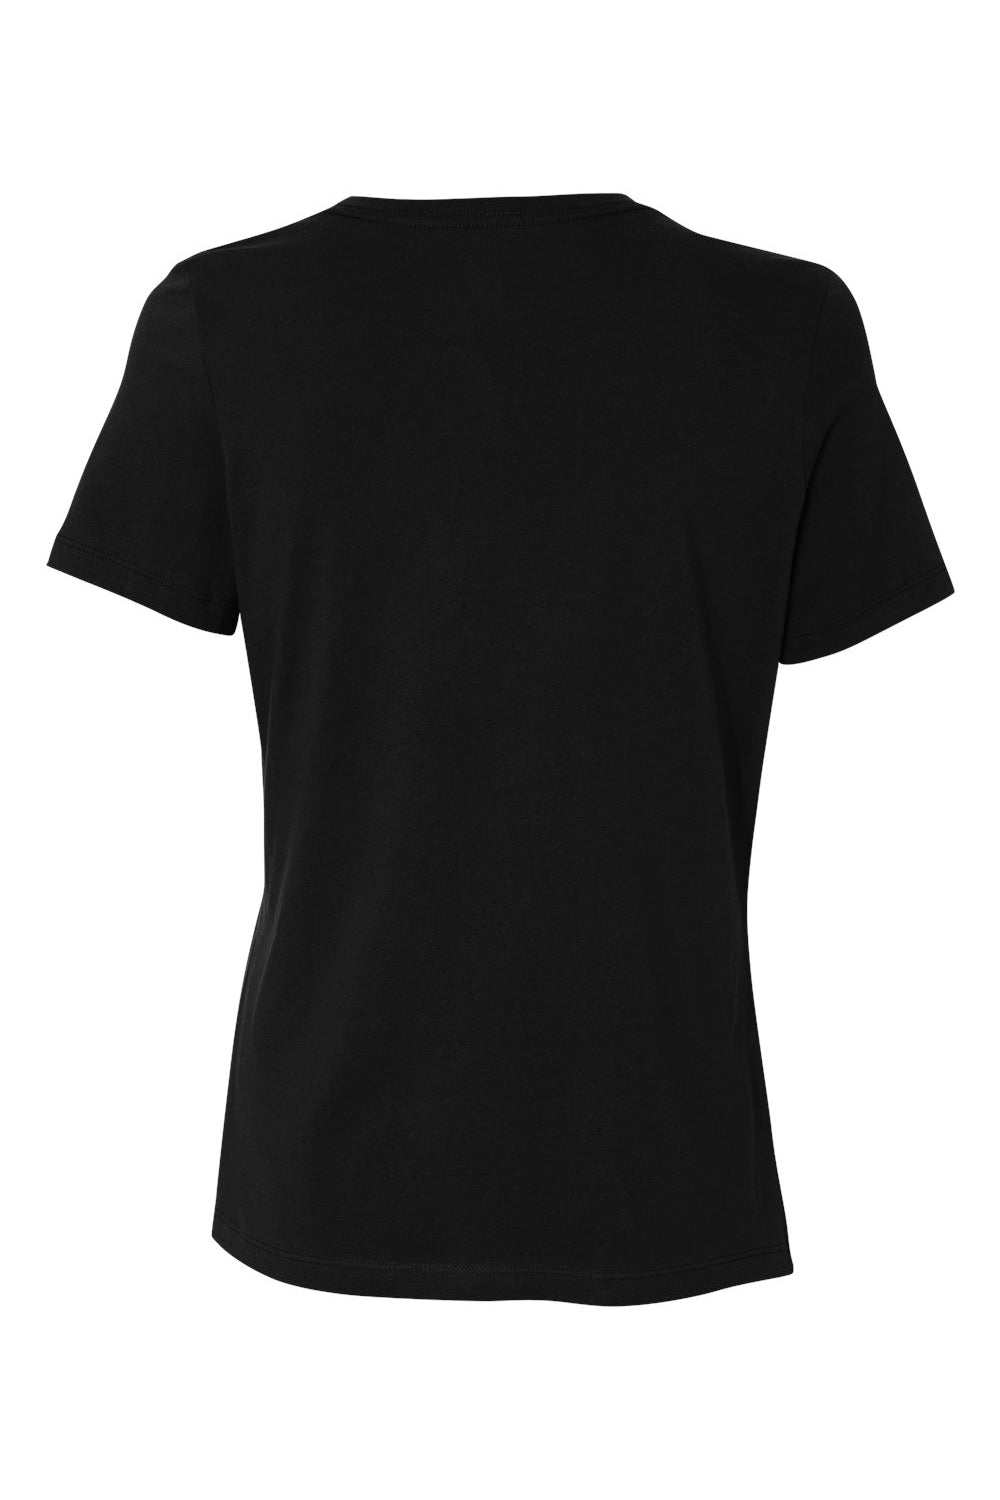 Bella + Canvas BC6400CVC/6400CVC Womens CVC Short Sleeve Crewneck T-Shirt Solid Black Flat Back